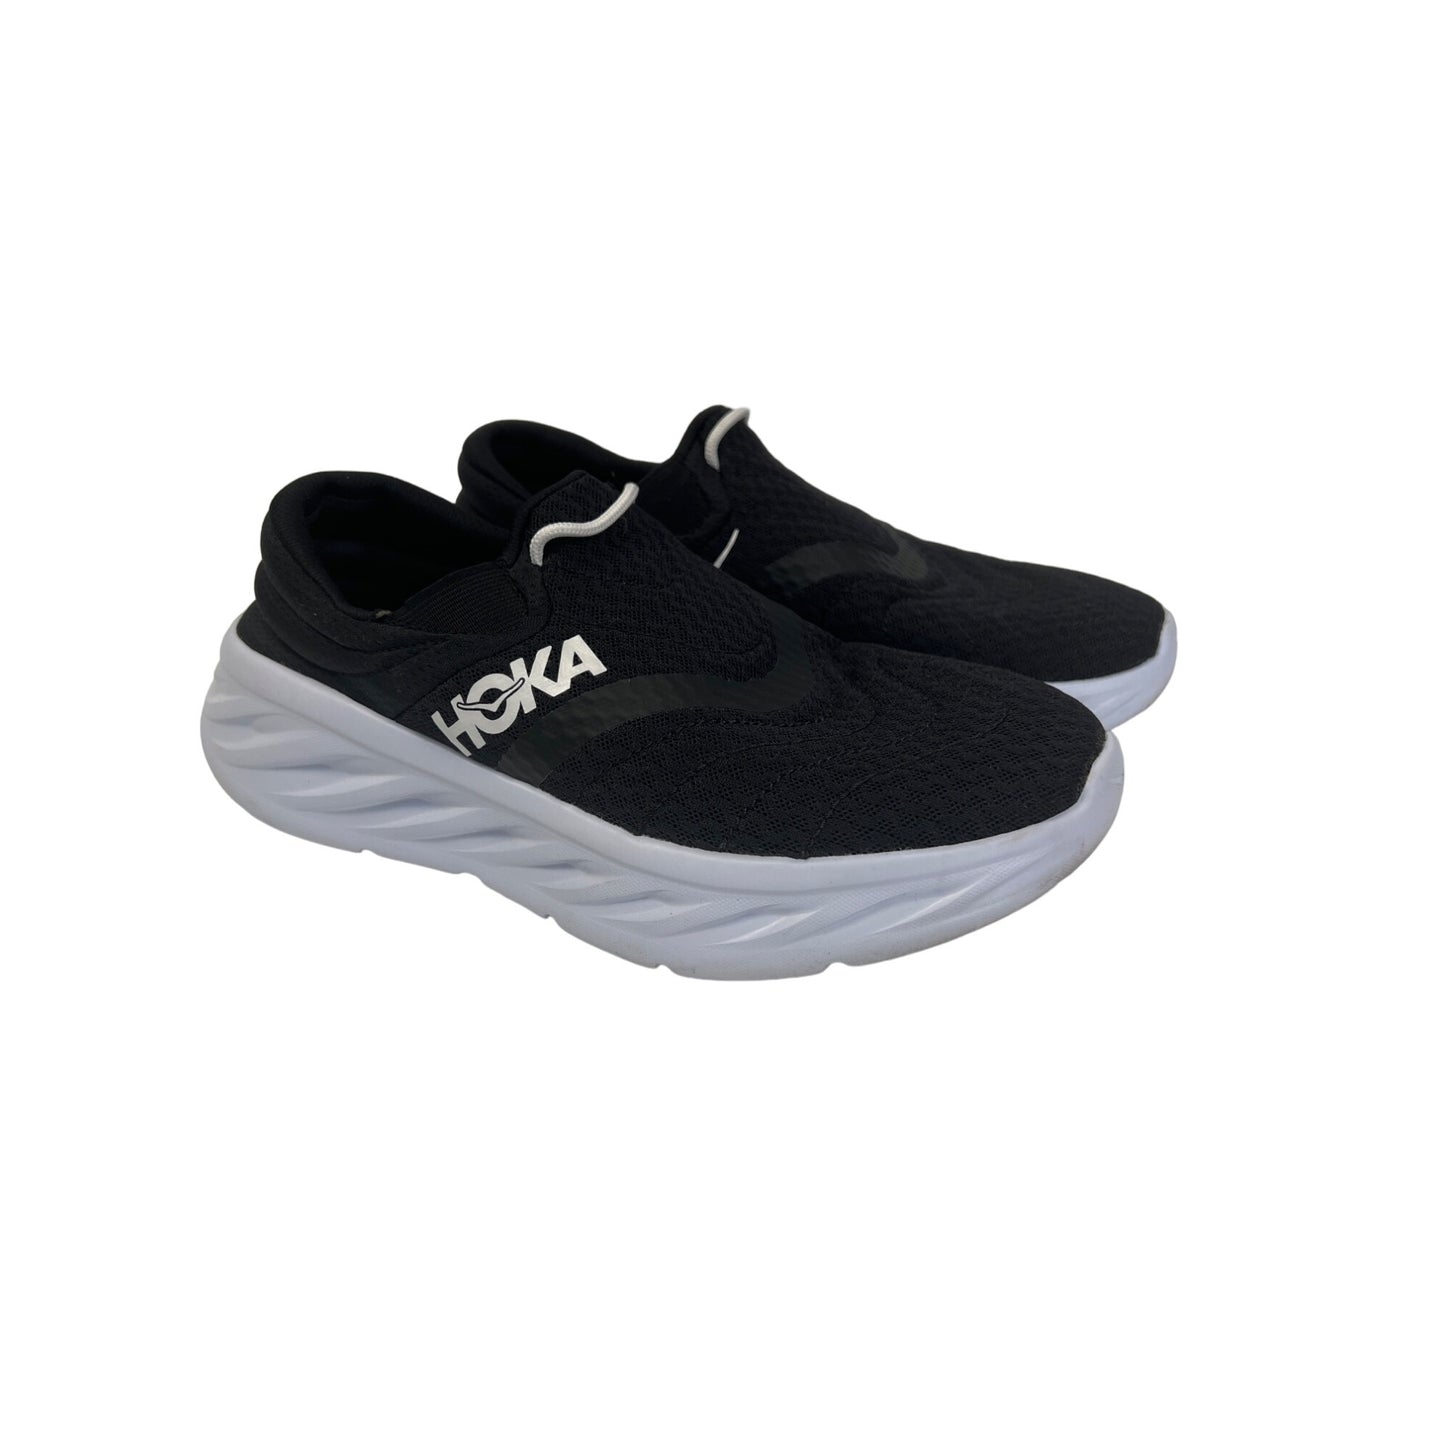 Hoka Black and White Ora Recovery 2 Tennis Shoe